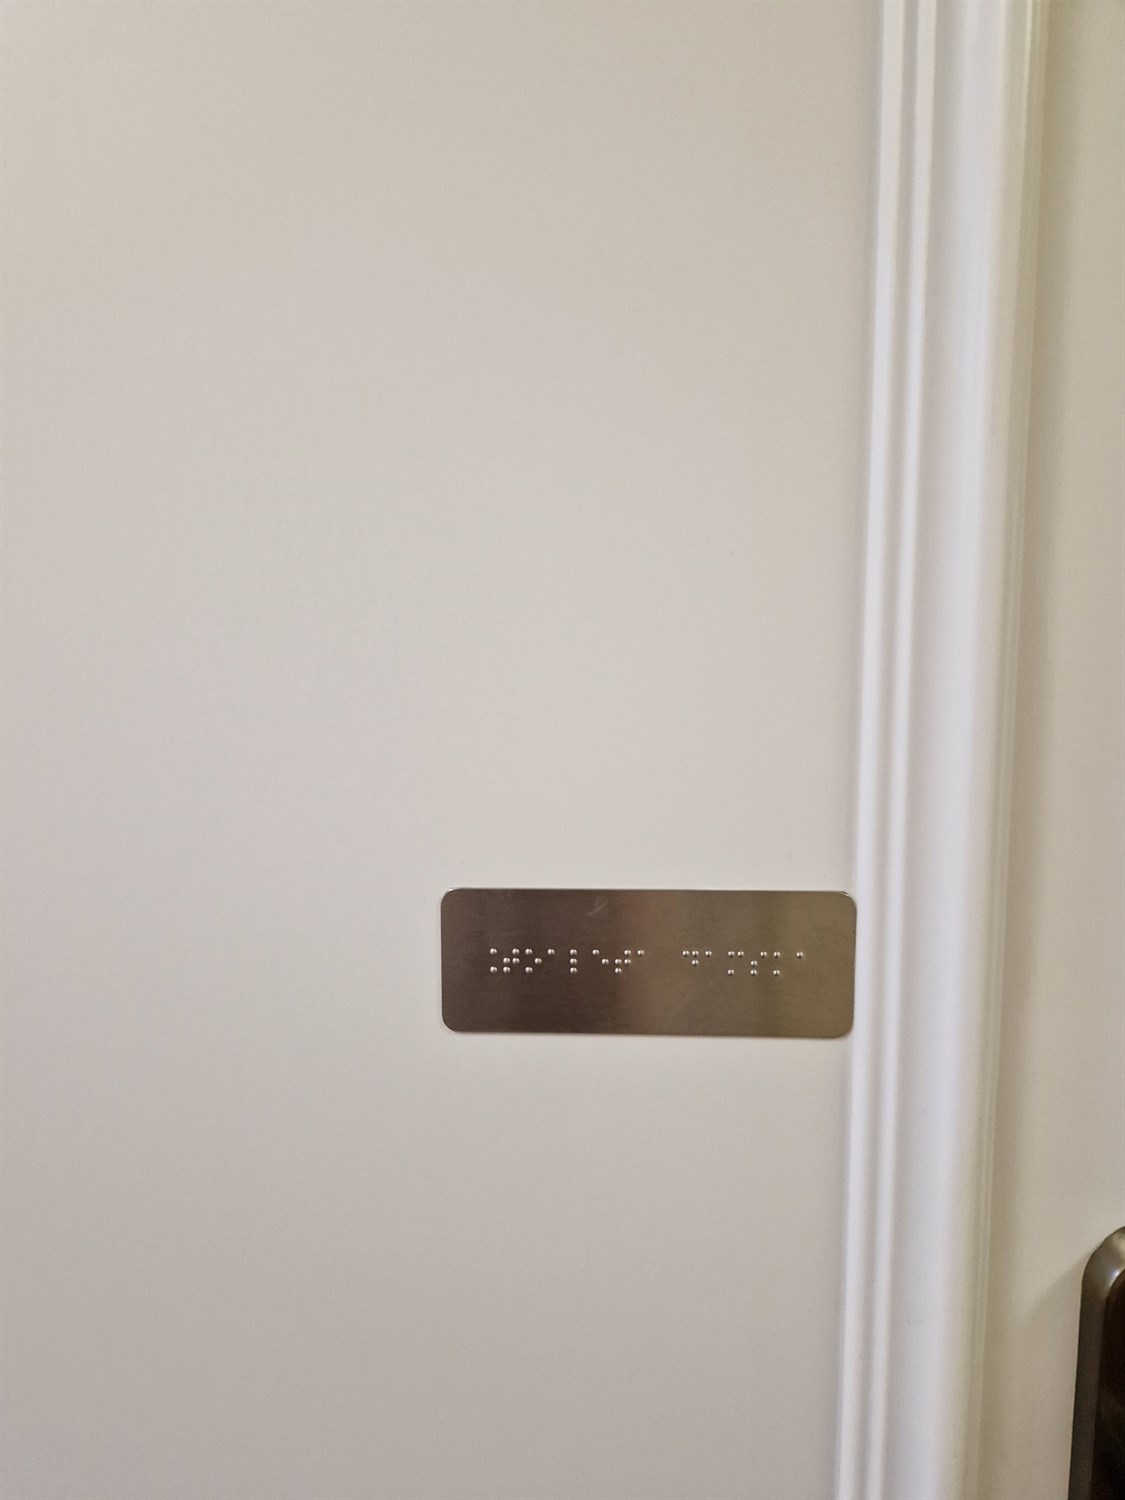 Informacyjna Metalowa Tabliczka Brajlowska Na Drzwi